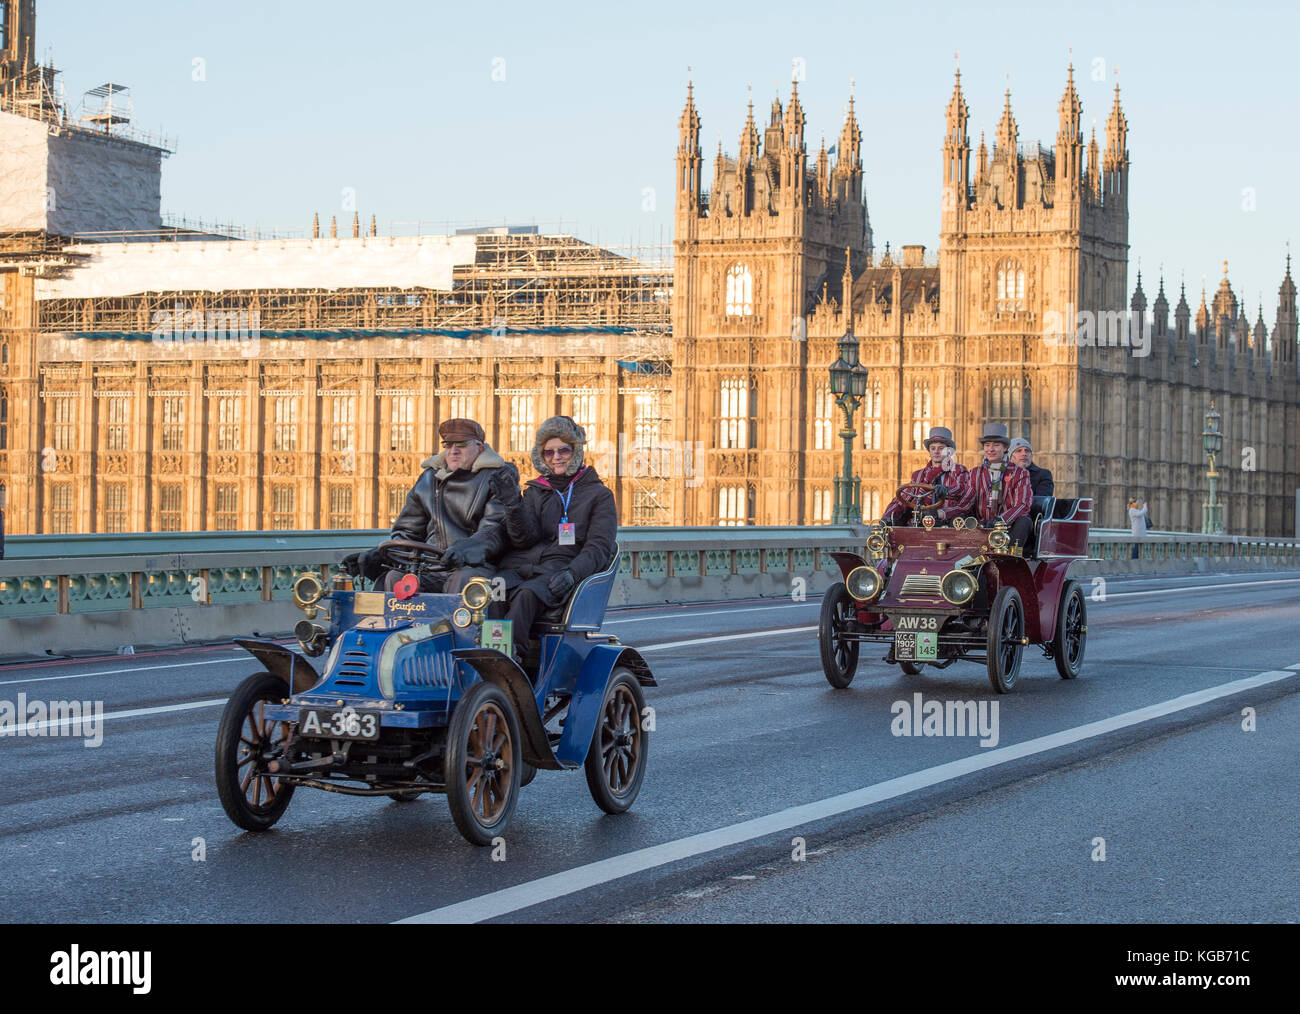 5 novembre 2017. Bonhams London à Brighton, la course automobile de vétéran, la plus longue course automobile au monde, 1903 Peugeot sur le pont de Westminster. Banque D'Images